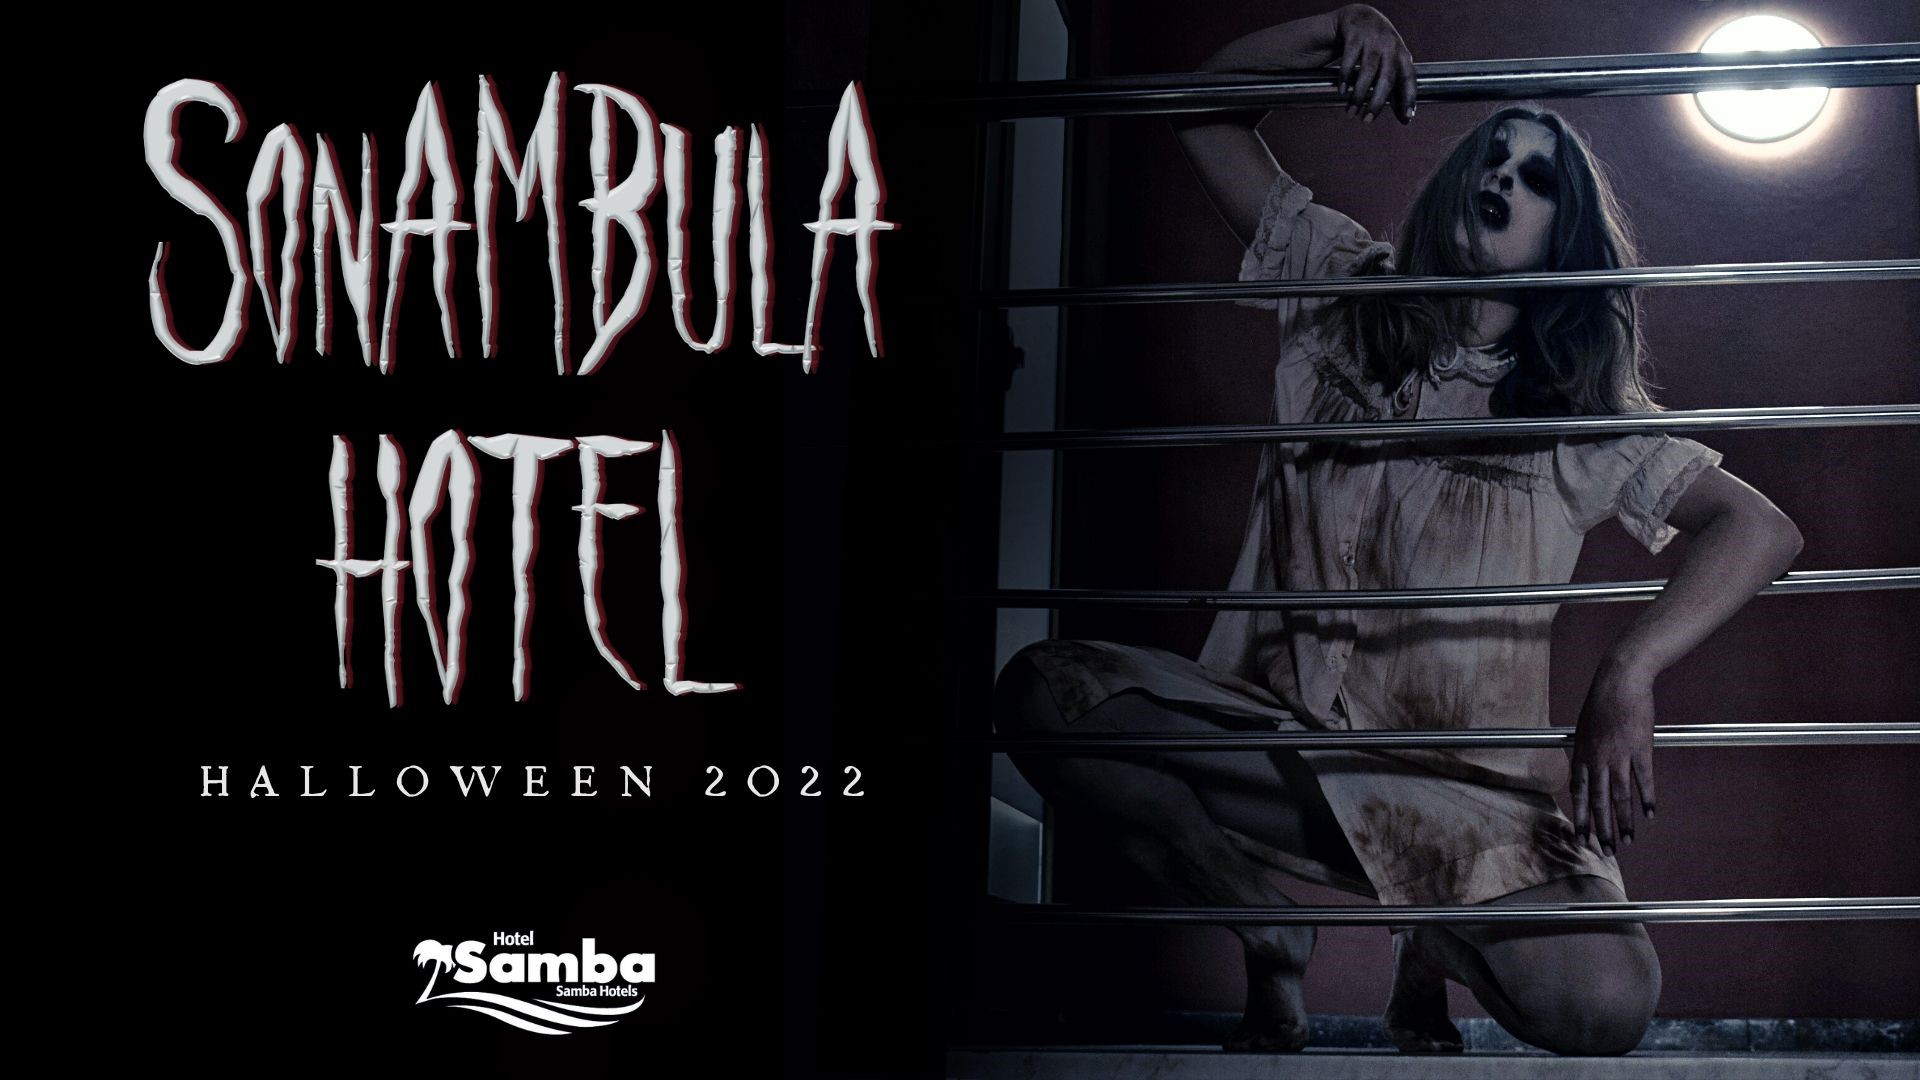 Benvinguts al Sonambula Hotel!